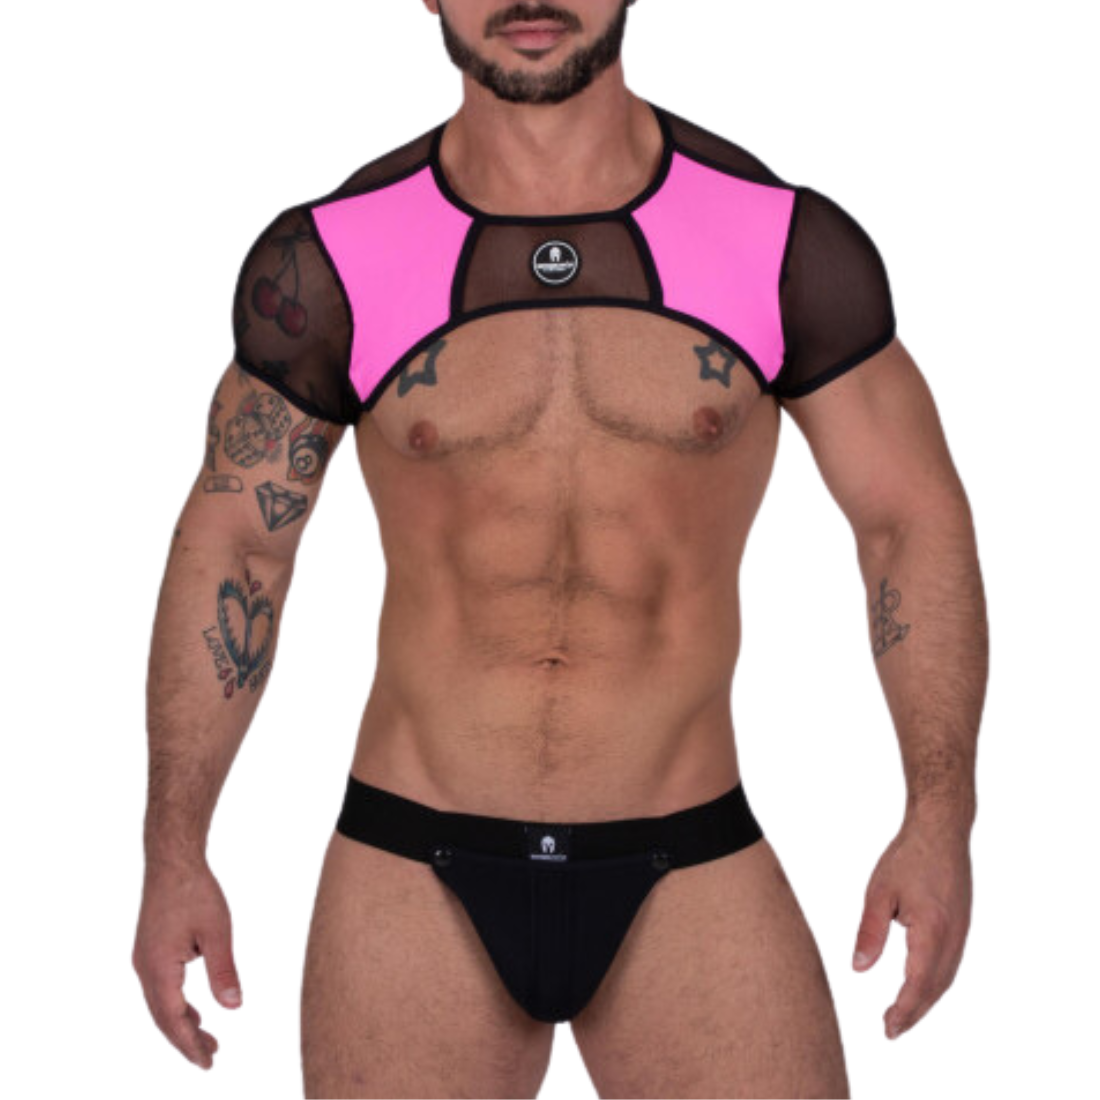 Sexy roze harnas en zwarte jockstrap ontworpen door 'The House Of Sparta's Harness' en t koop bij Flavourez.